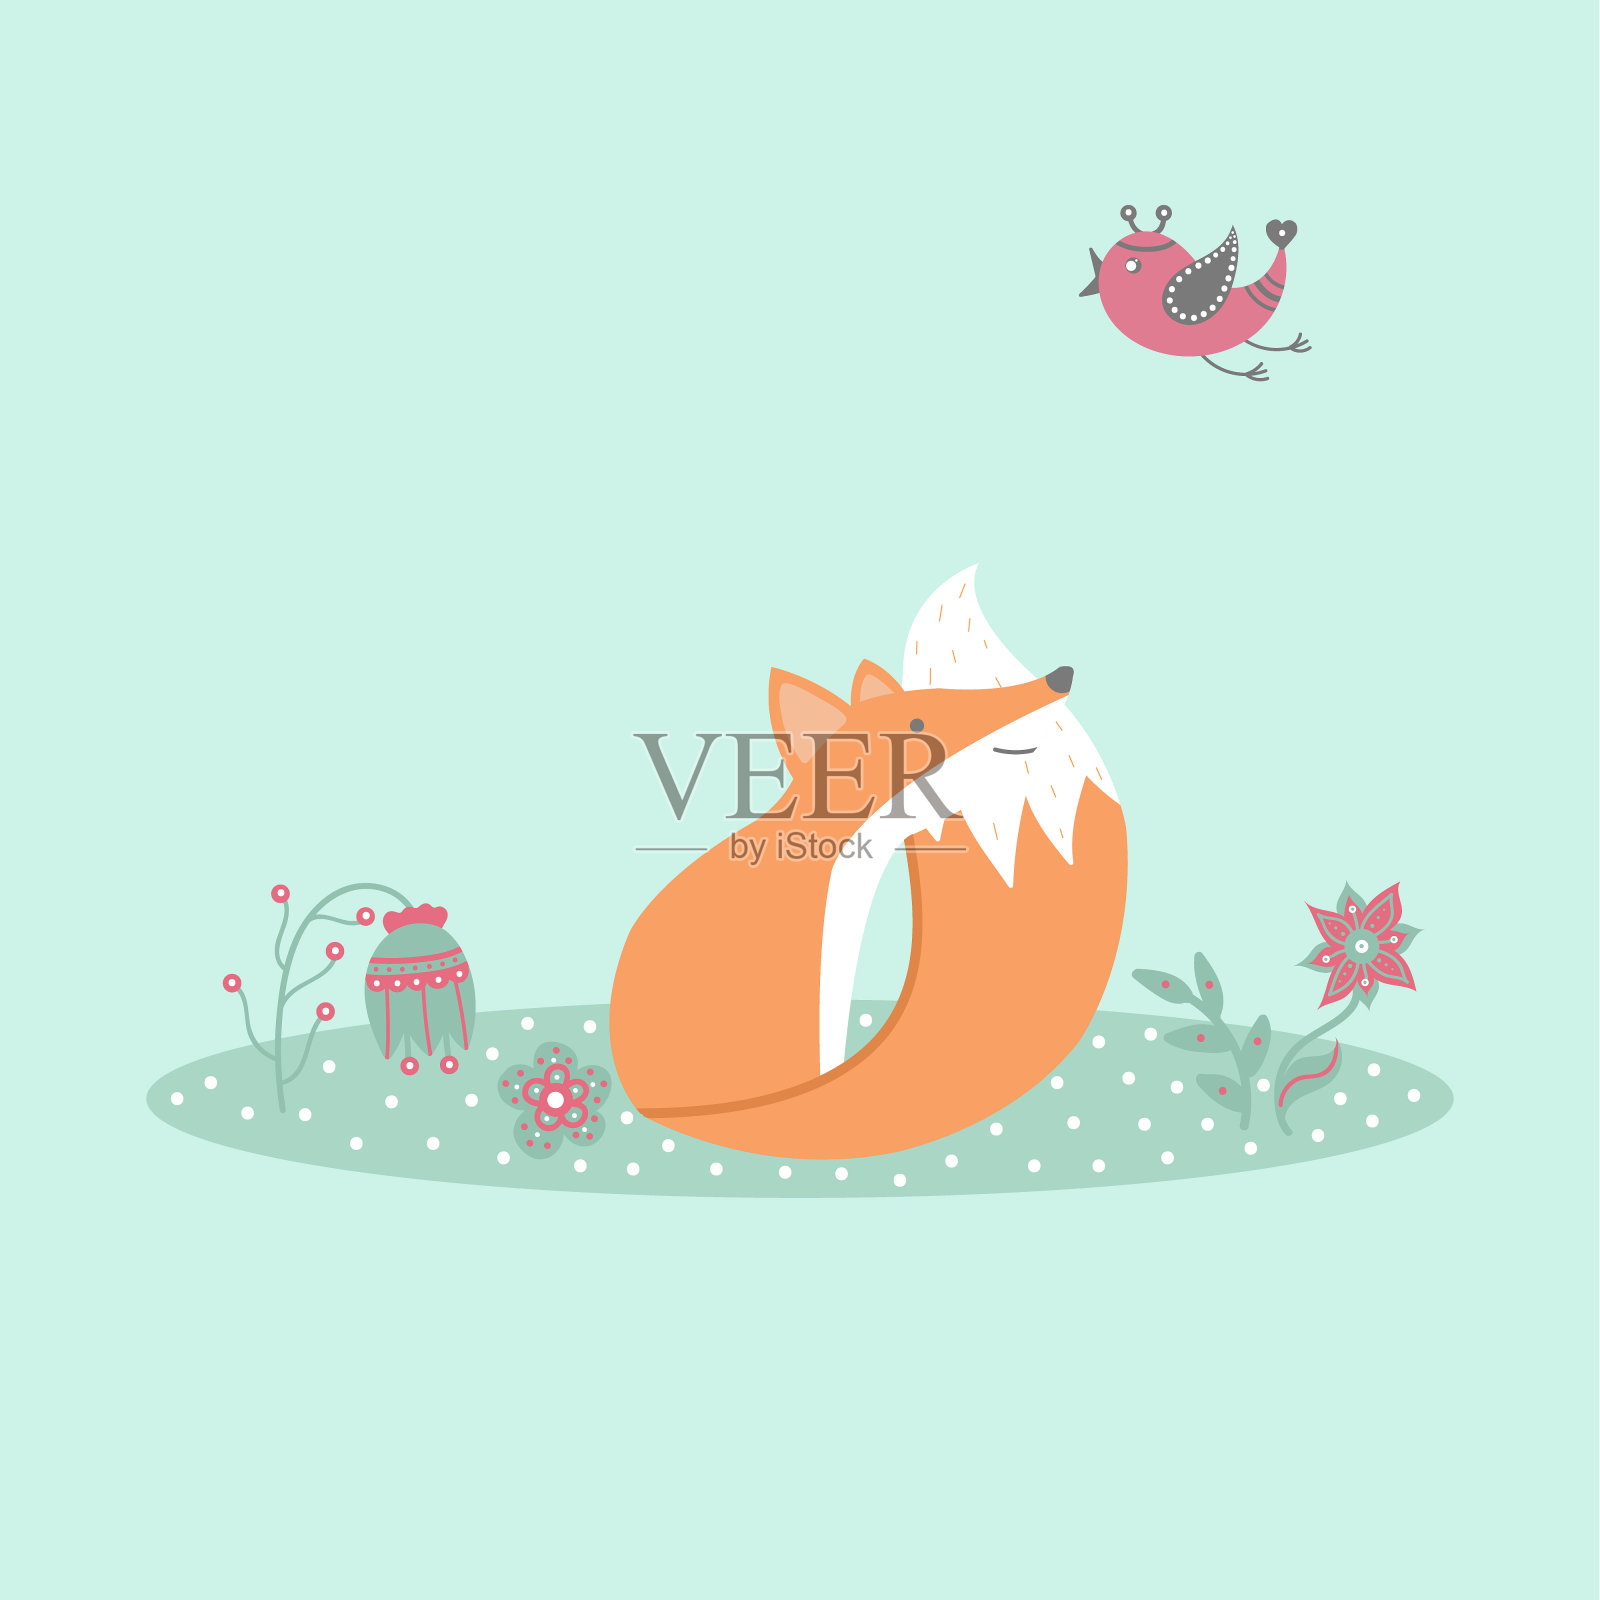 可爱的狐狸坐在草坪上，有卡通风格的鸟和花设计元素图片